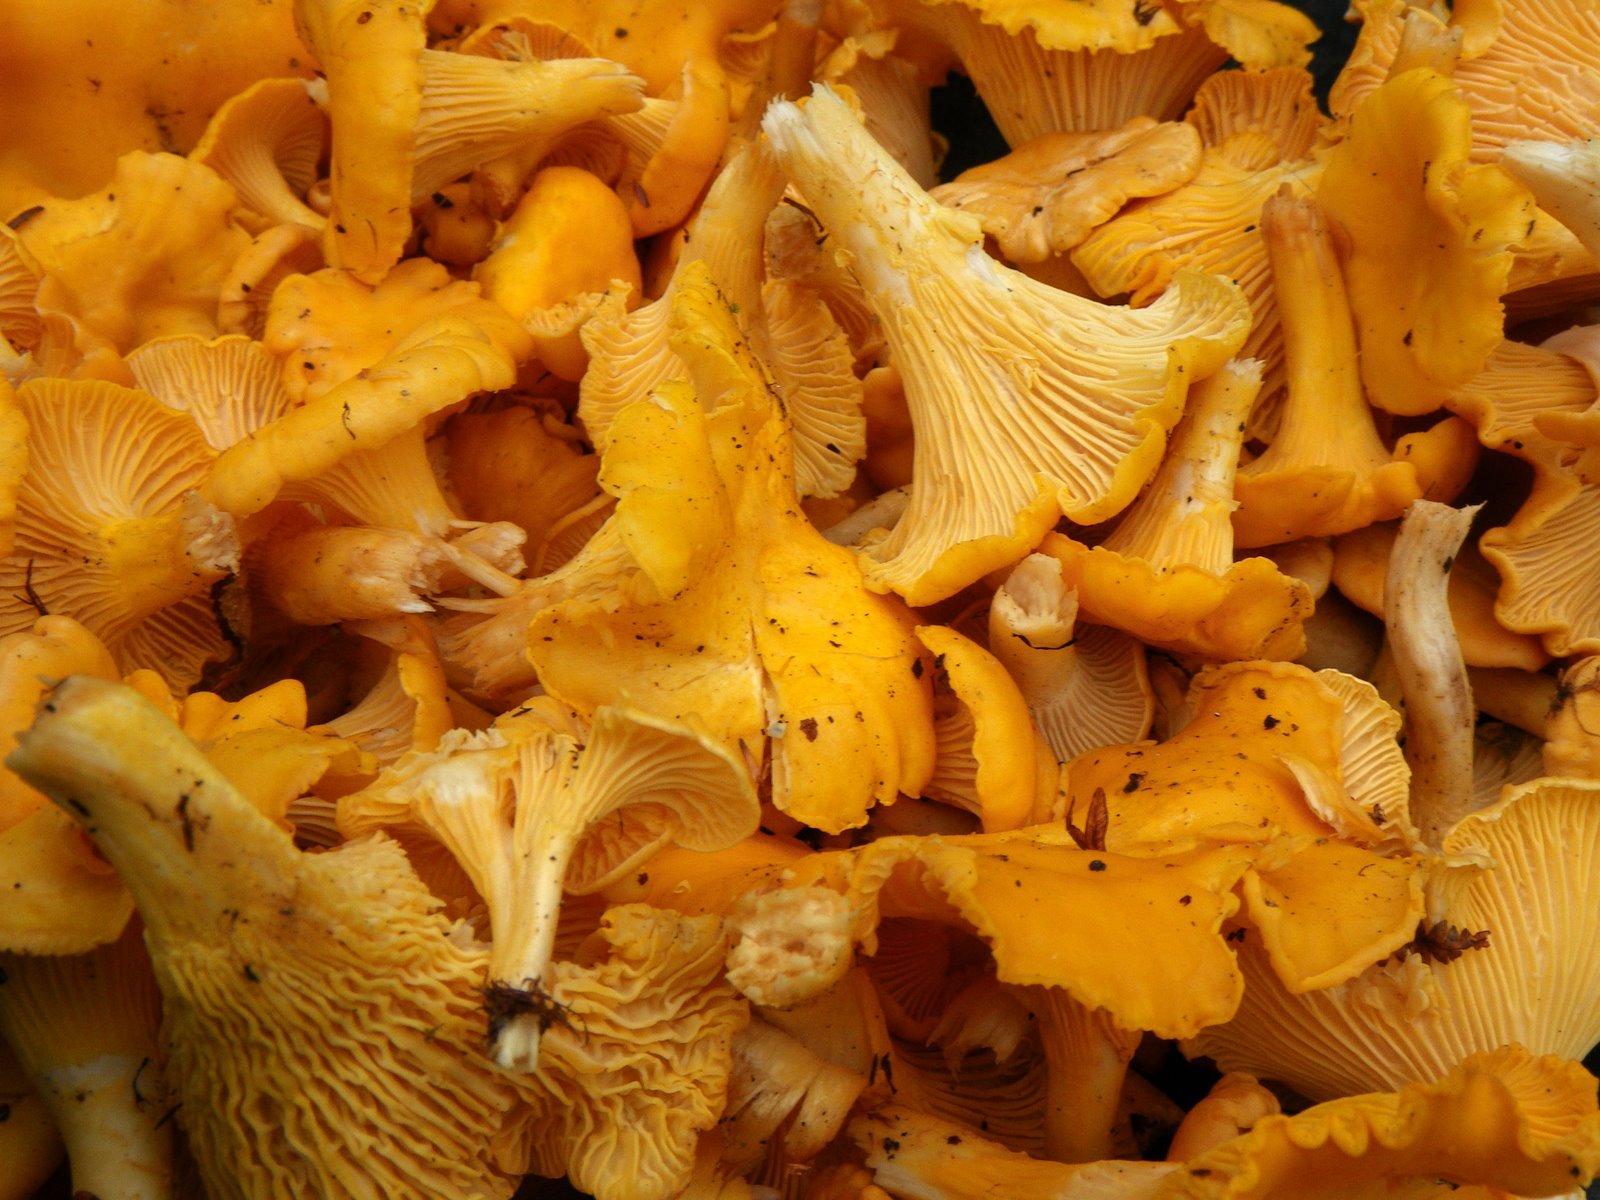 Specialty mushrooms